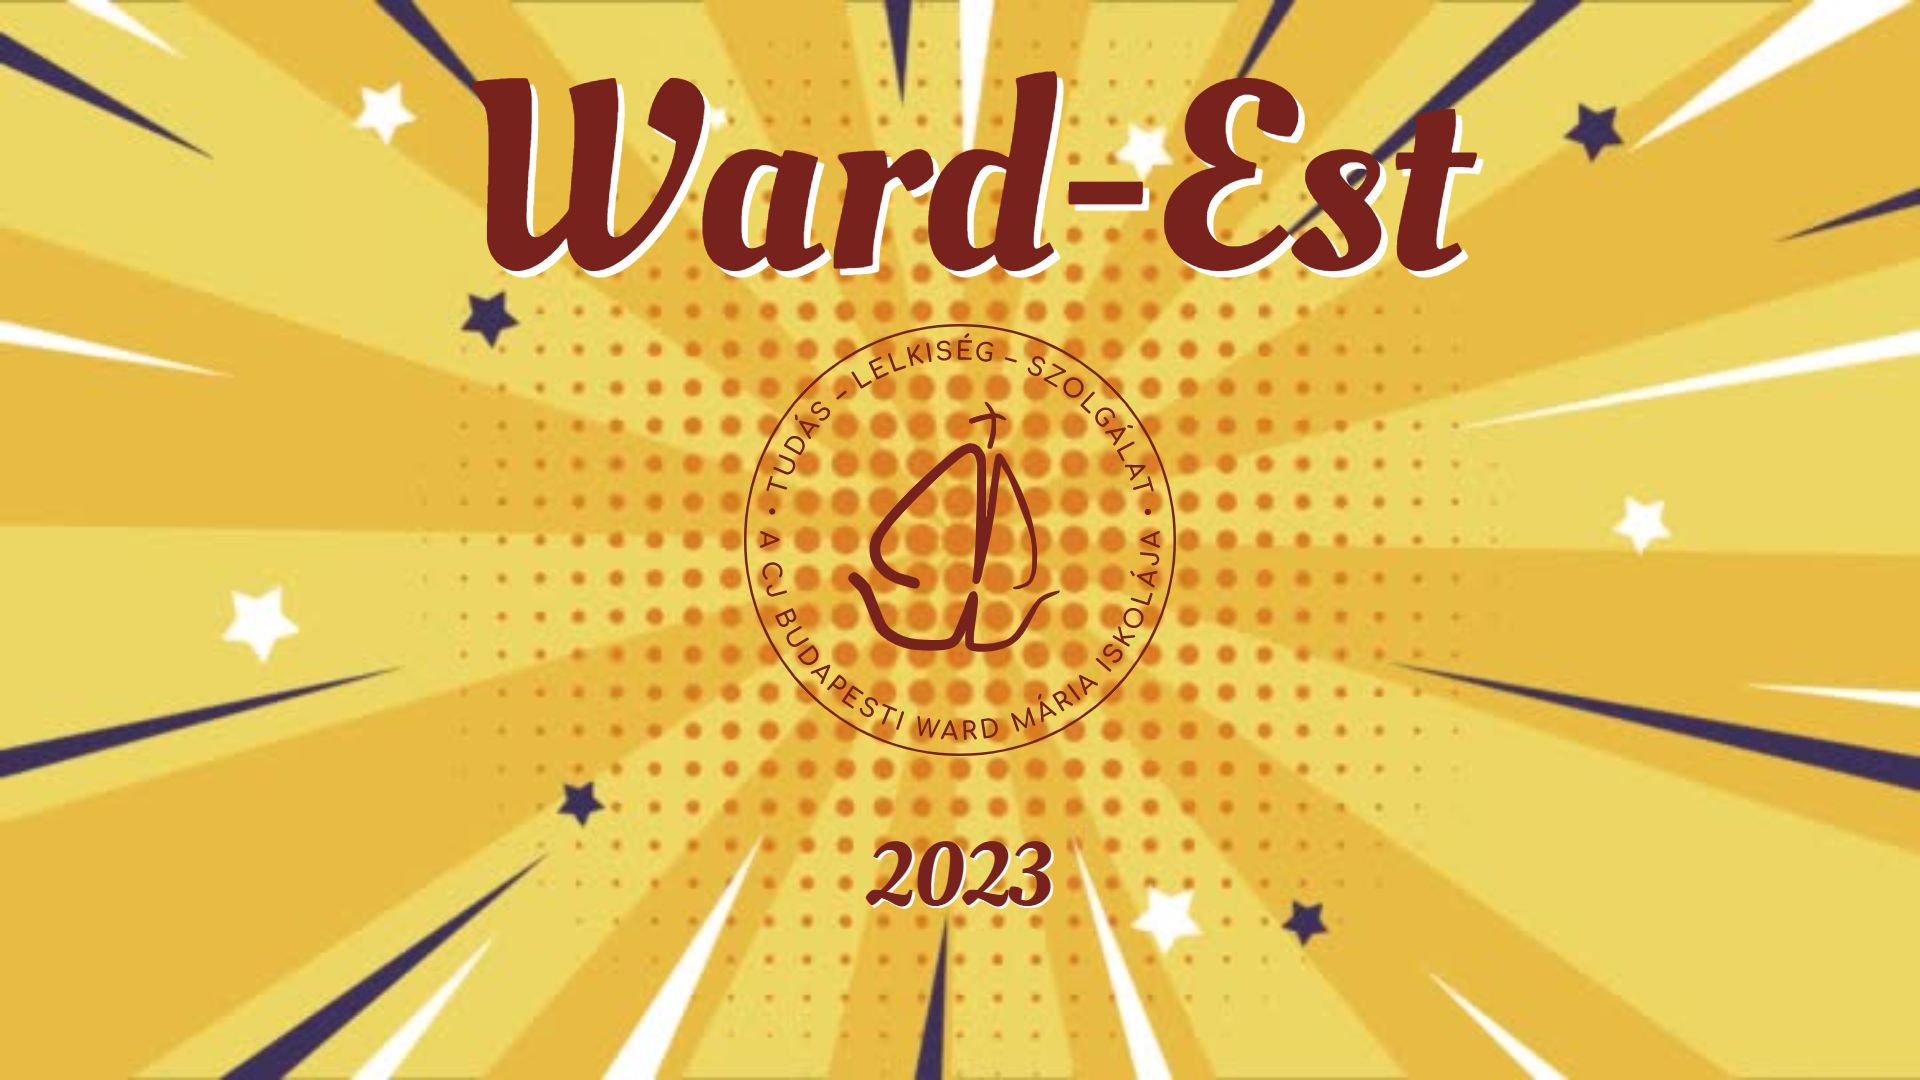 Ward-Est 2023